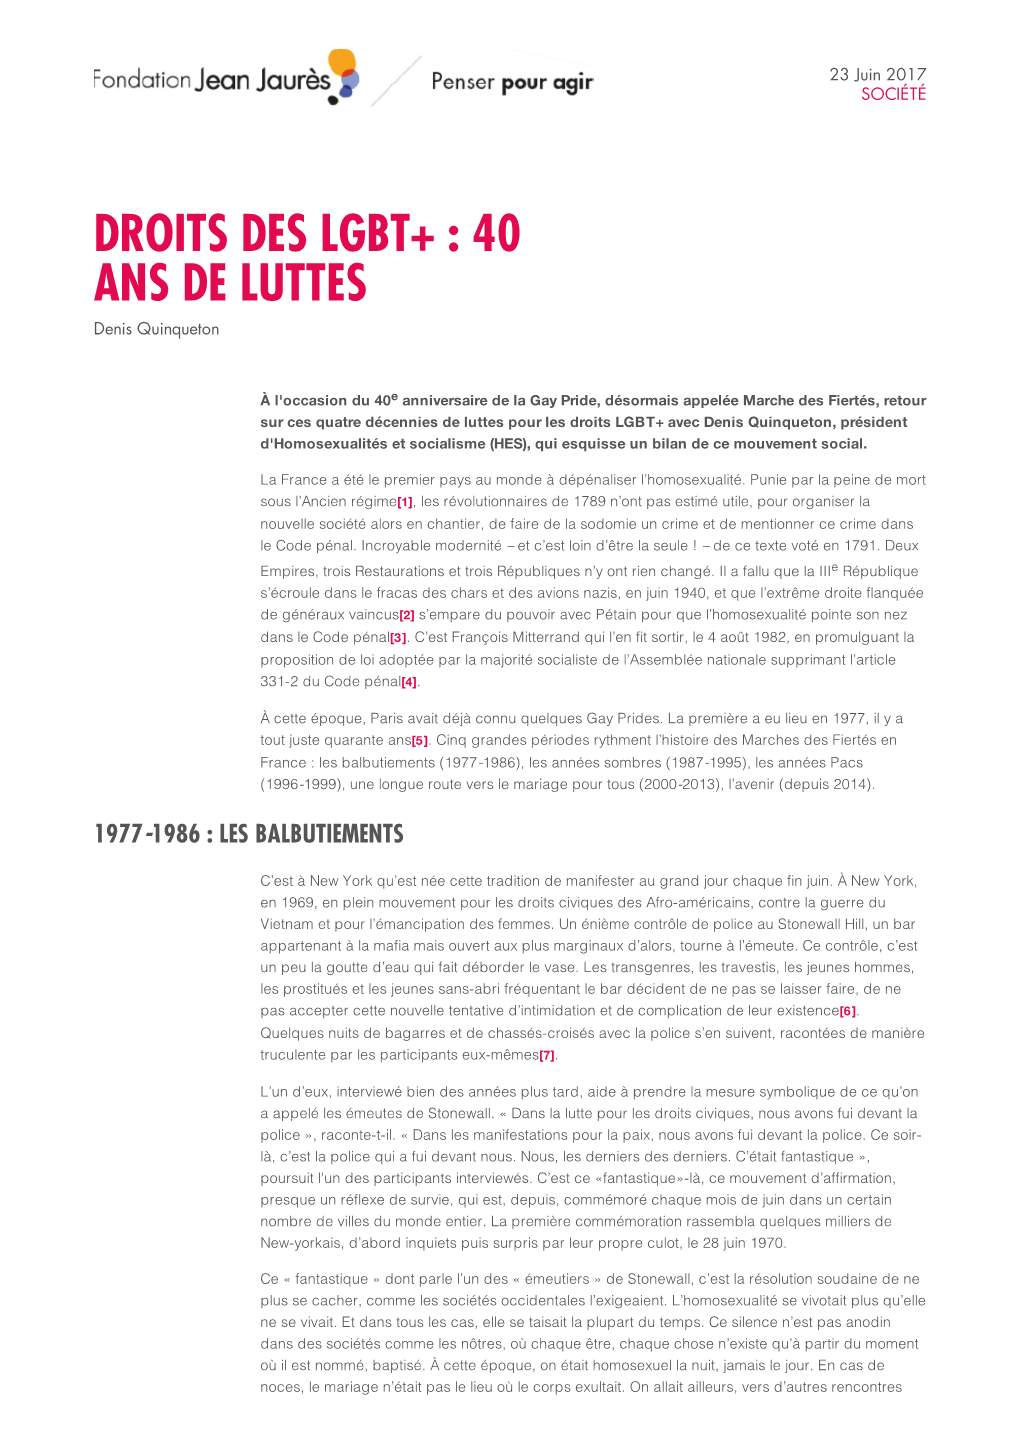 DROITS DES LGBT+ : 40 ANS DE LUTTES Denis Quinqueton